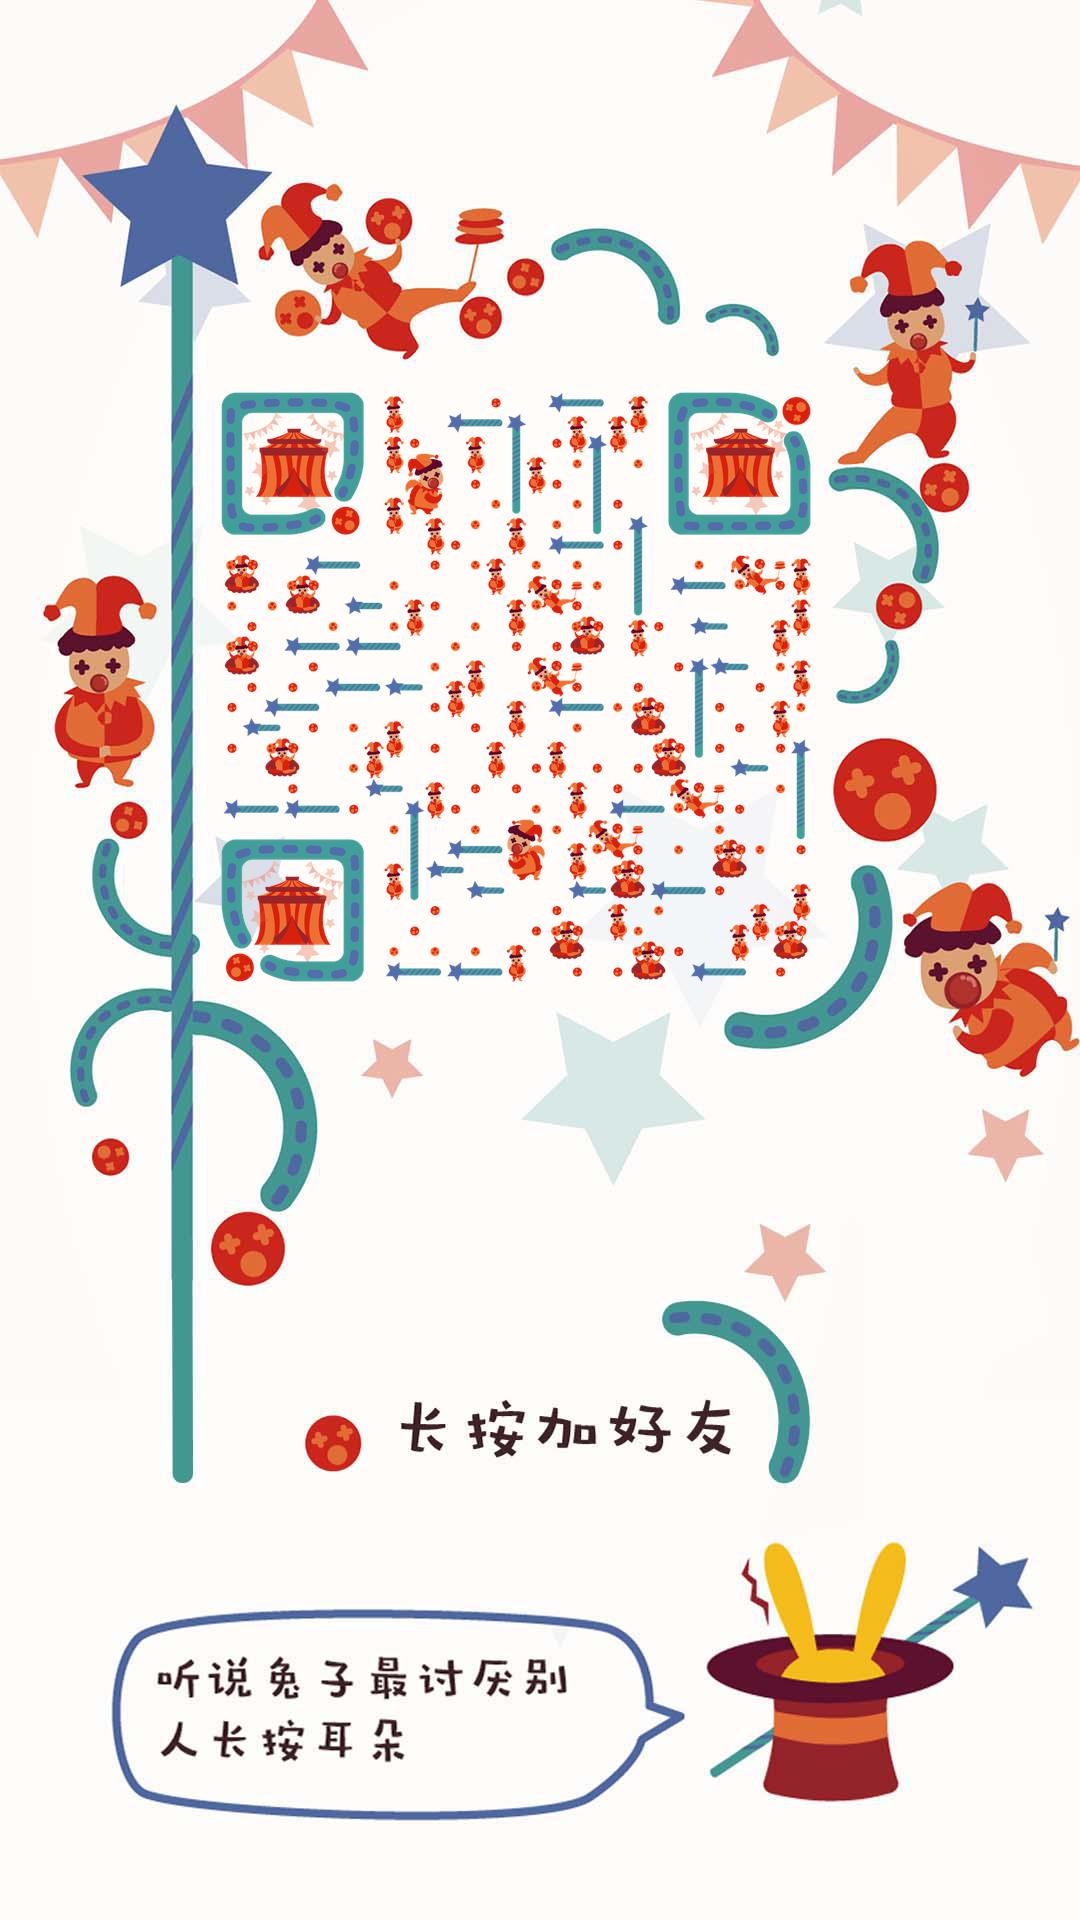 小丑马戏团愚人节庆祝联欢会二维码生成器-平面静态-手机海报